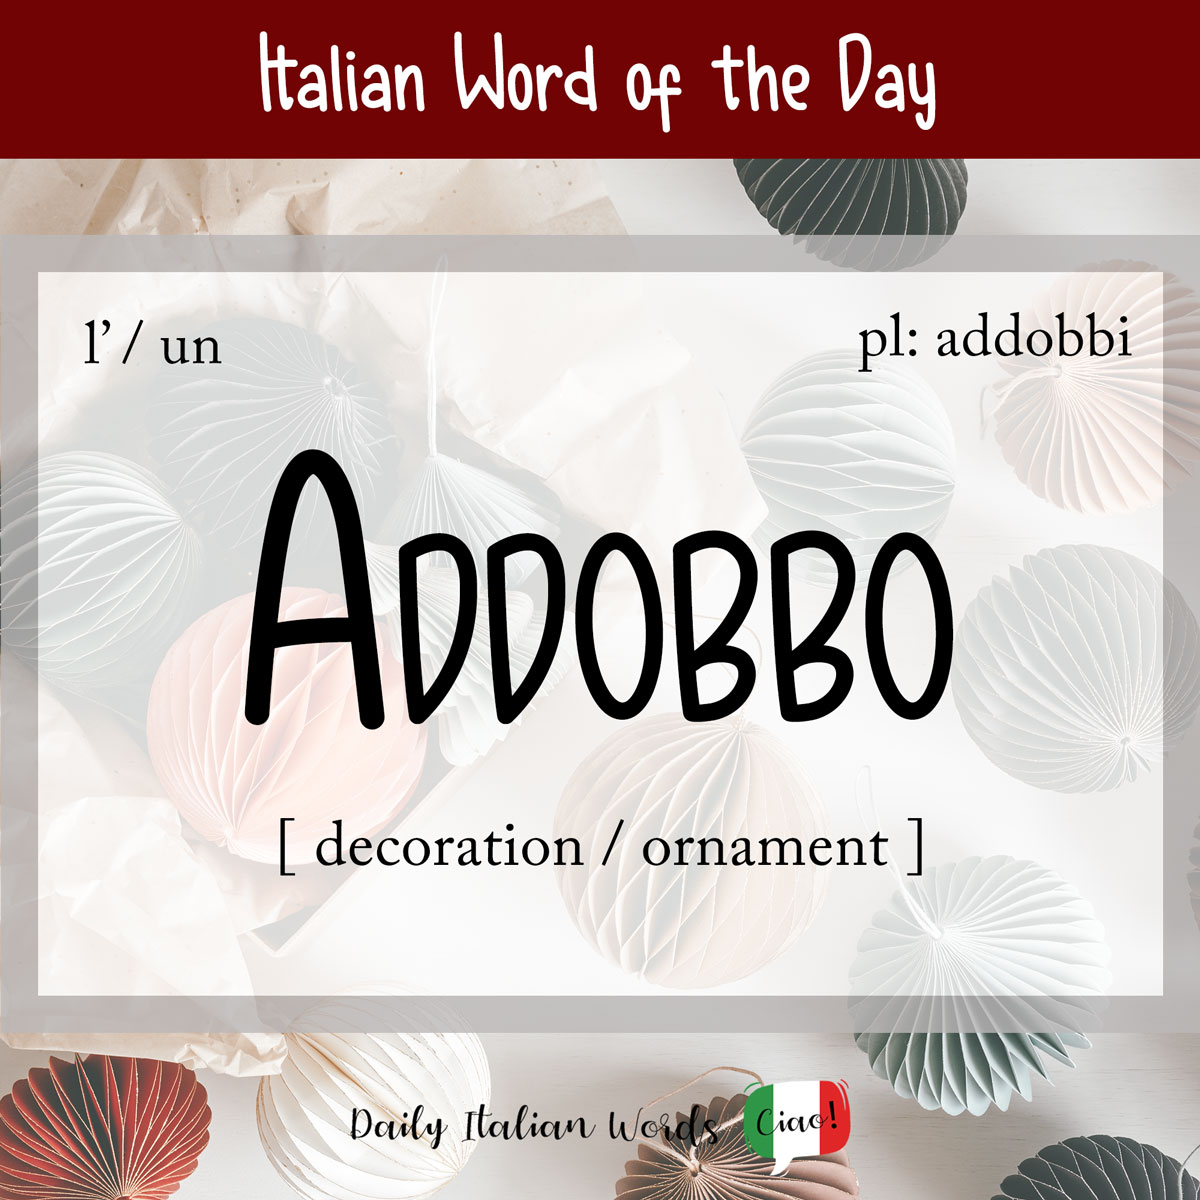 Italian Phrase of the Day: Addobbo (ornament / decoration)